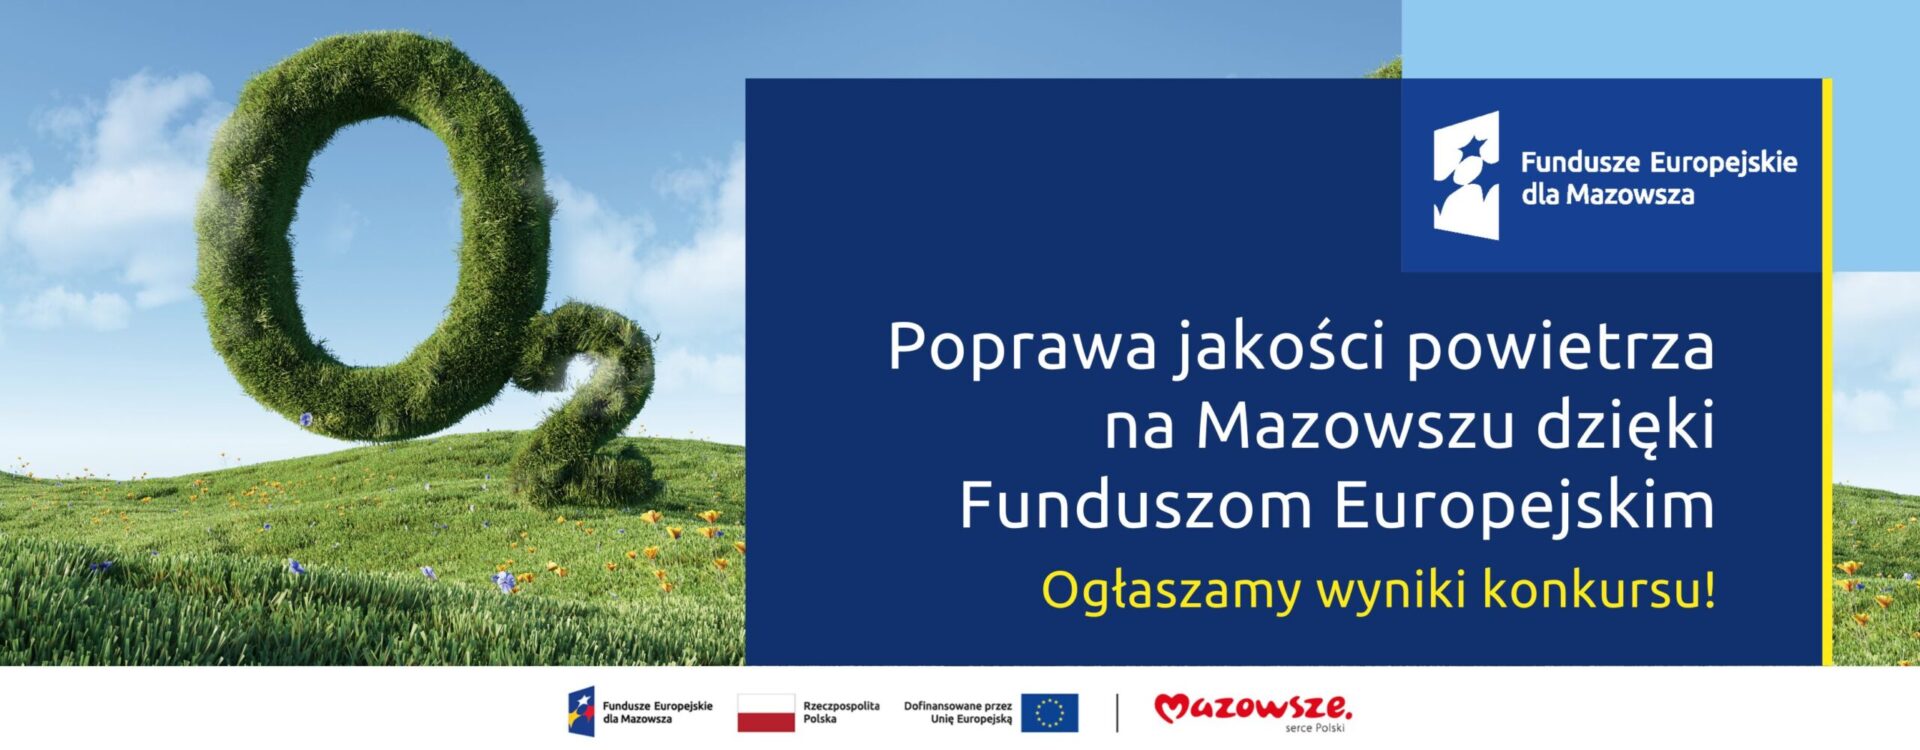 Poprawa jakości powietrza na Mazowszu dzięki Funduszom Europejskim. Ogłaszamy wyniki konkursu!